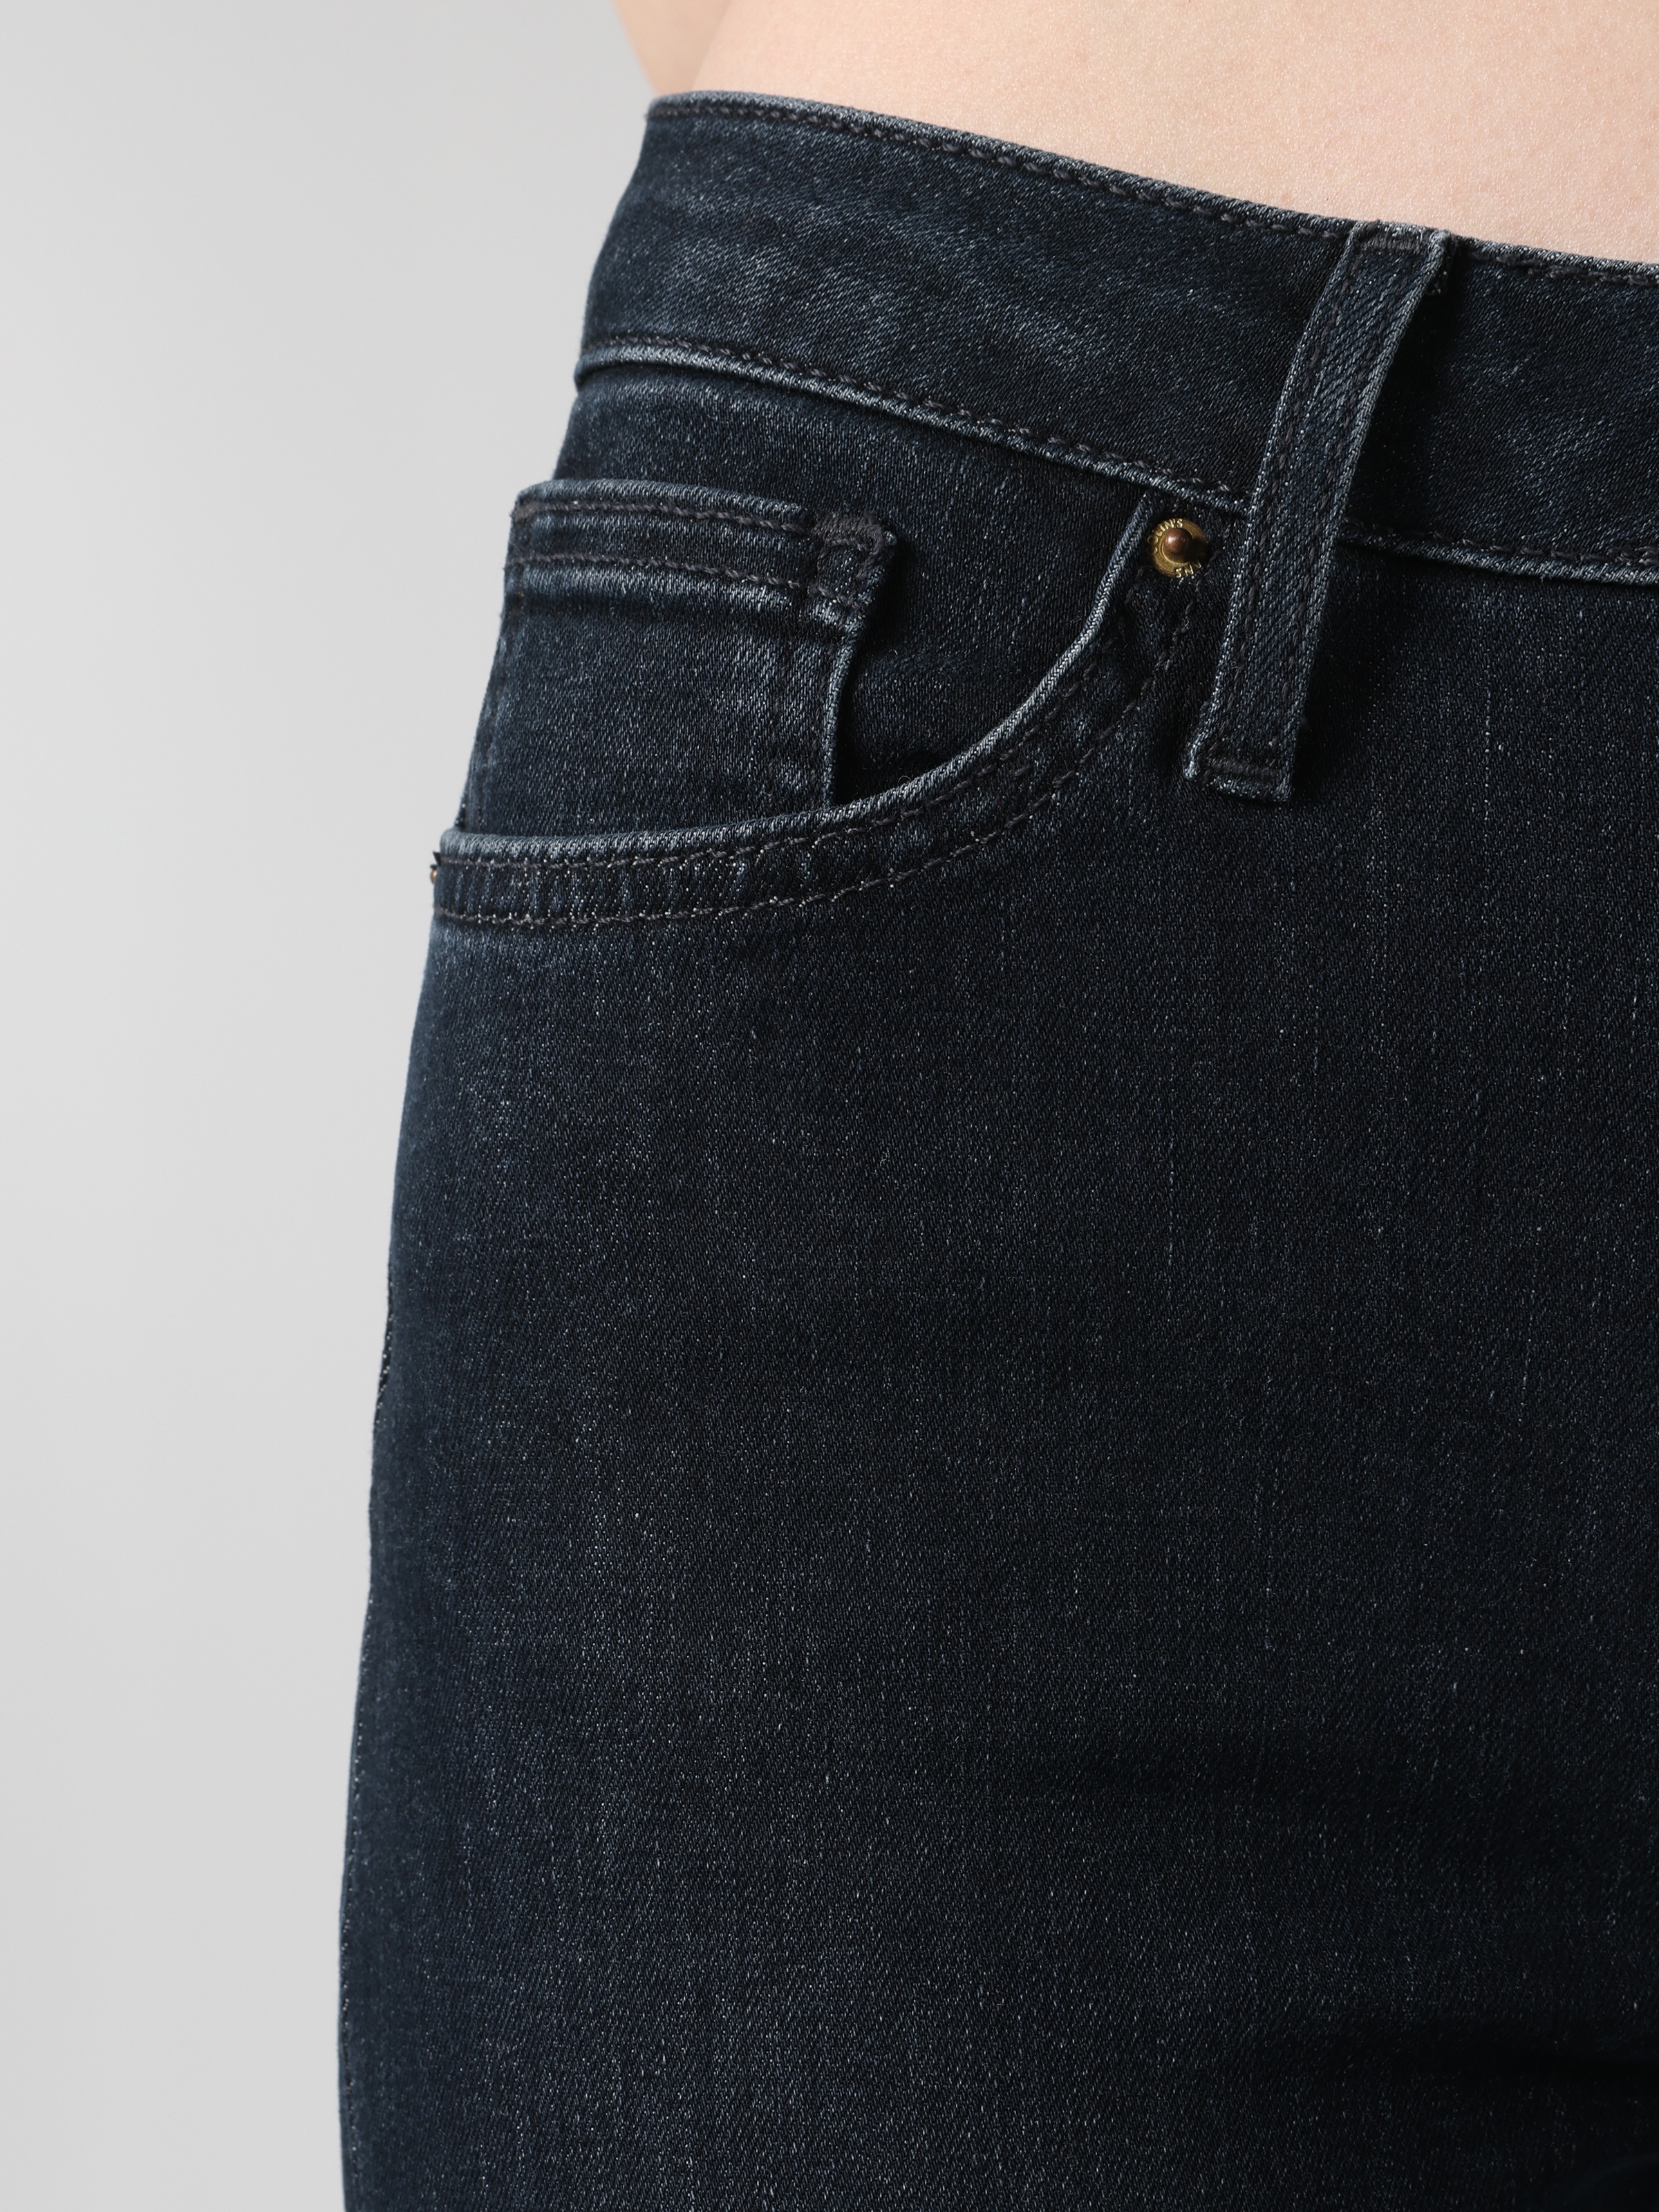 Afișați detalii pentru Pantaloni De Dama Albastru inchis Slim Fit 703 CARLA